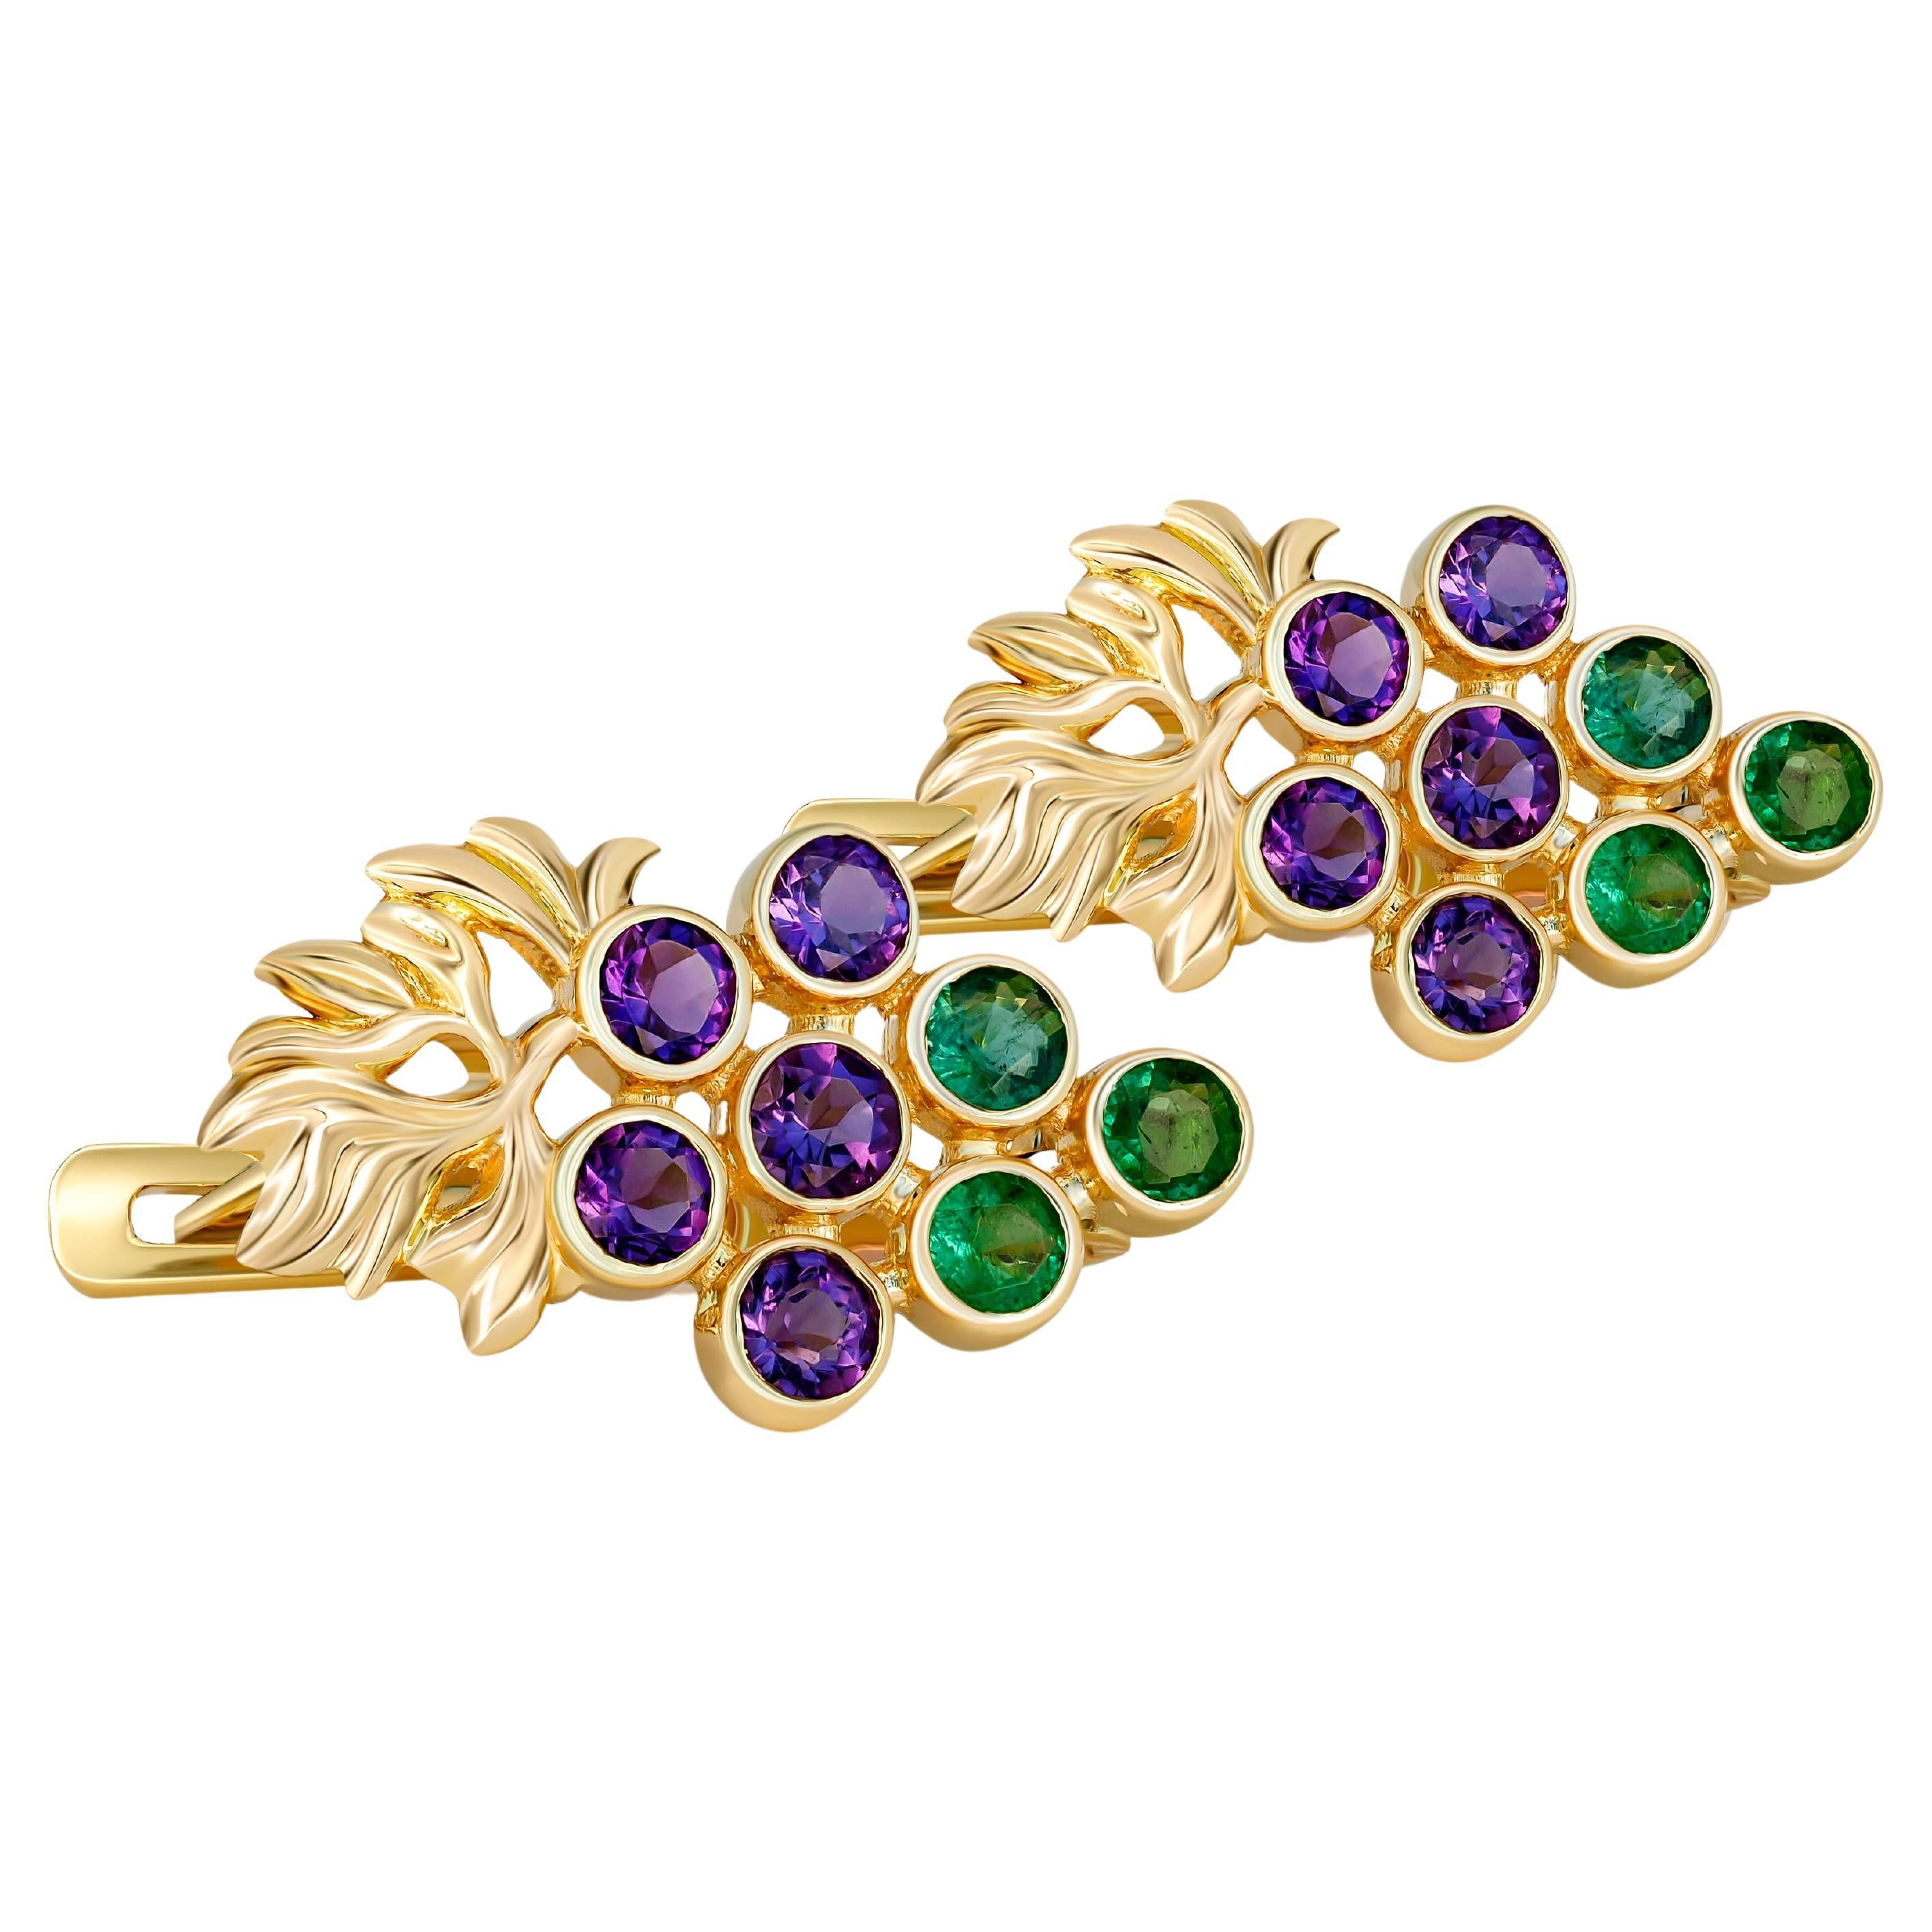 Grape-Ohrringe aus 14 Karat Gold mit Smaragden und Amethysten. 